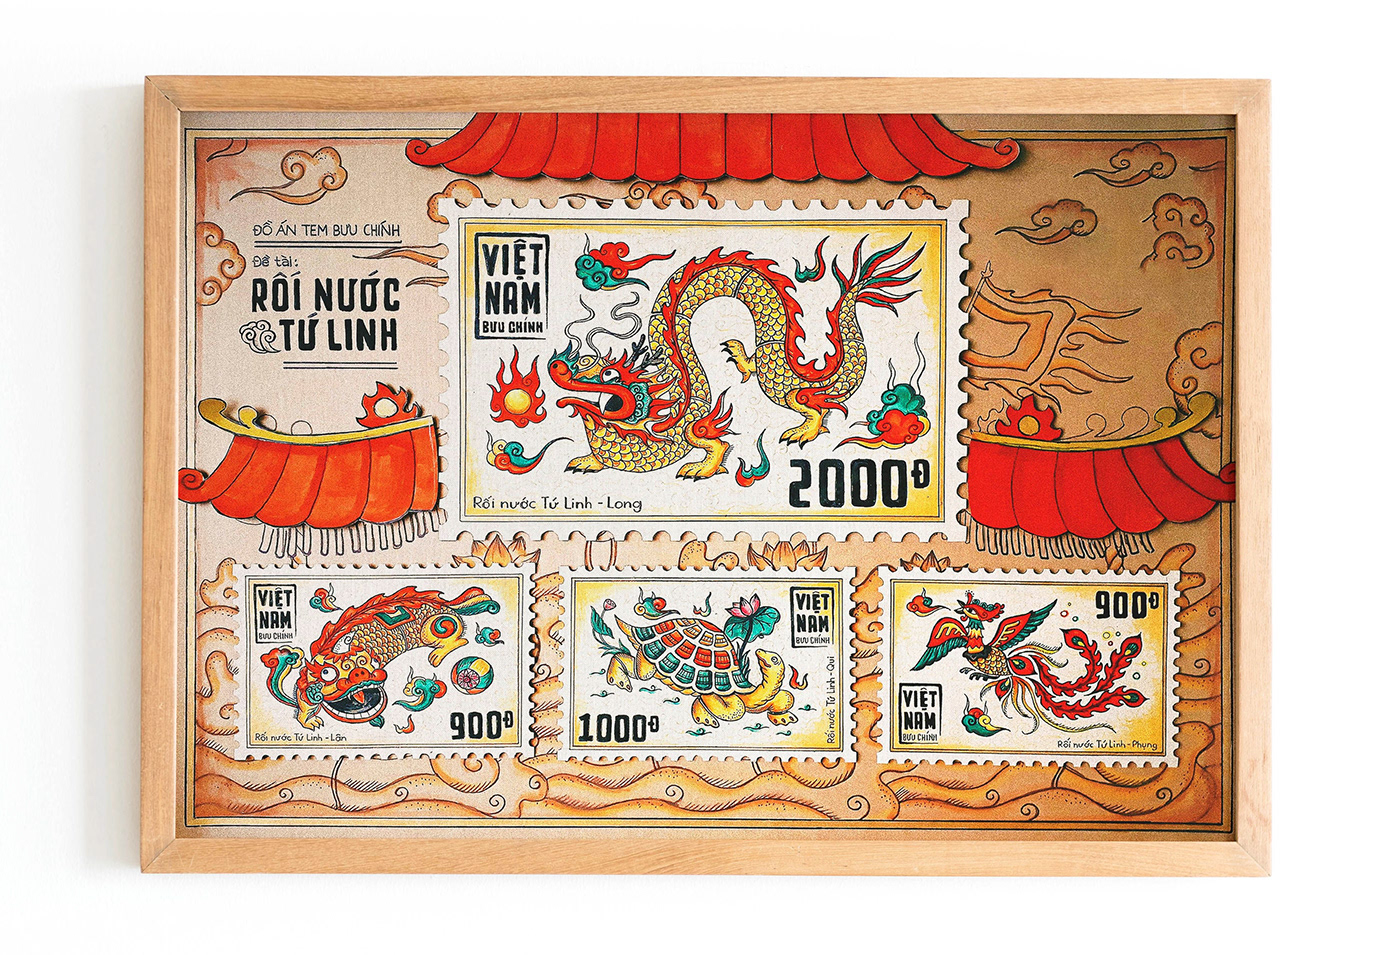 Kết hợp giữa tranh dân gian, bộ môn rối nước và hình tượng tứ linh quen thuộc, họa sĩ Vinh Loc đã sáng tác nên dự án bộ tem Rối nước Tứ linh mang đậm nét truyền thống Việt Nam.